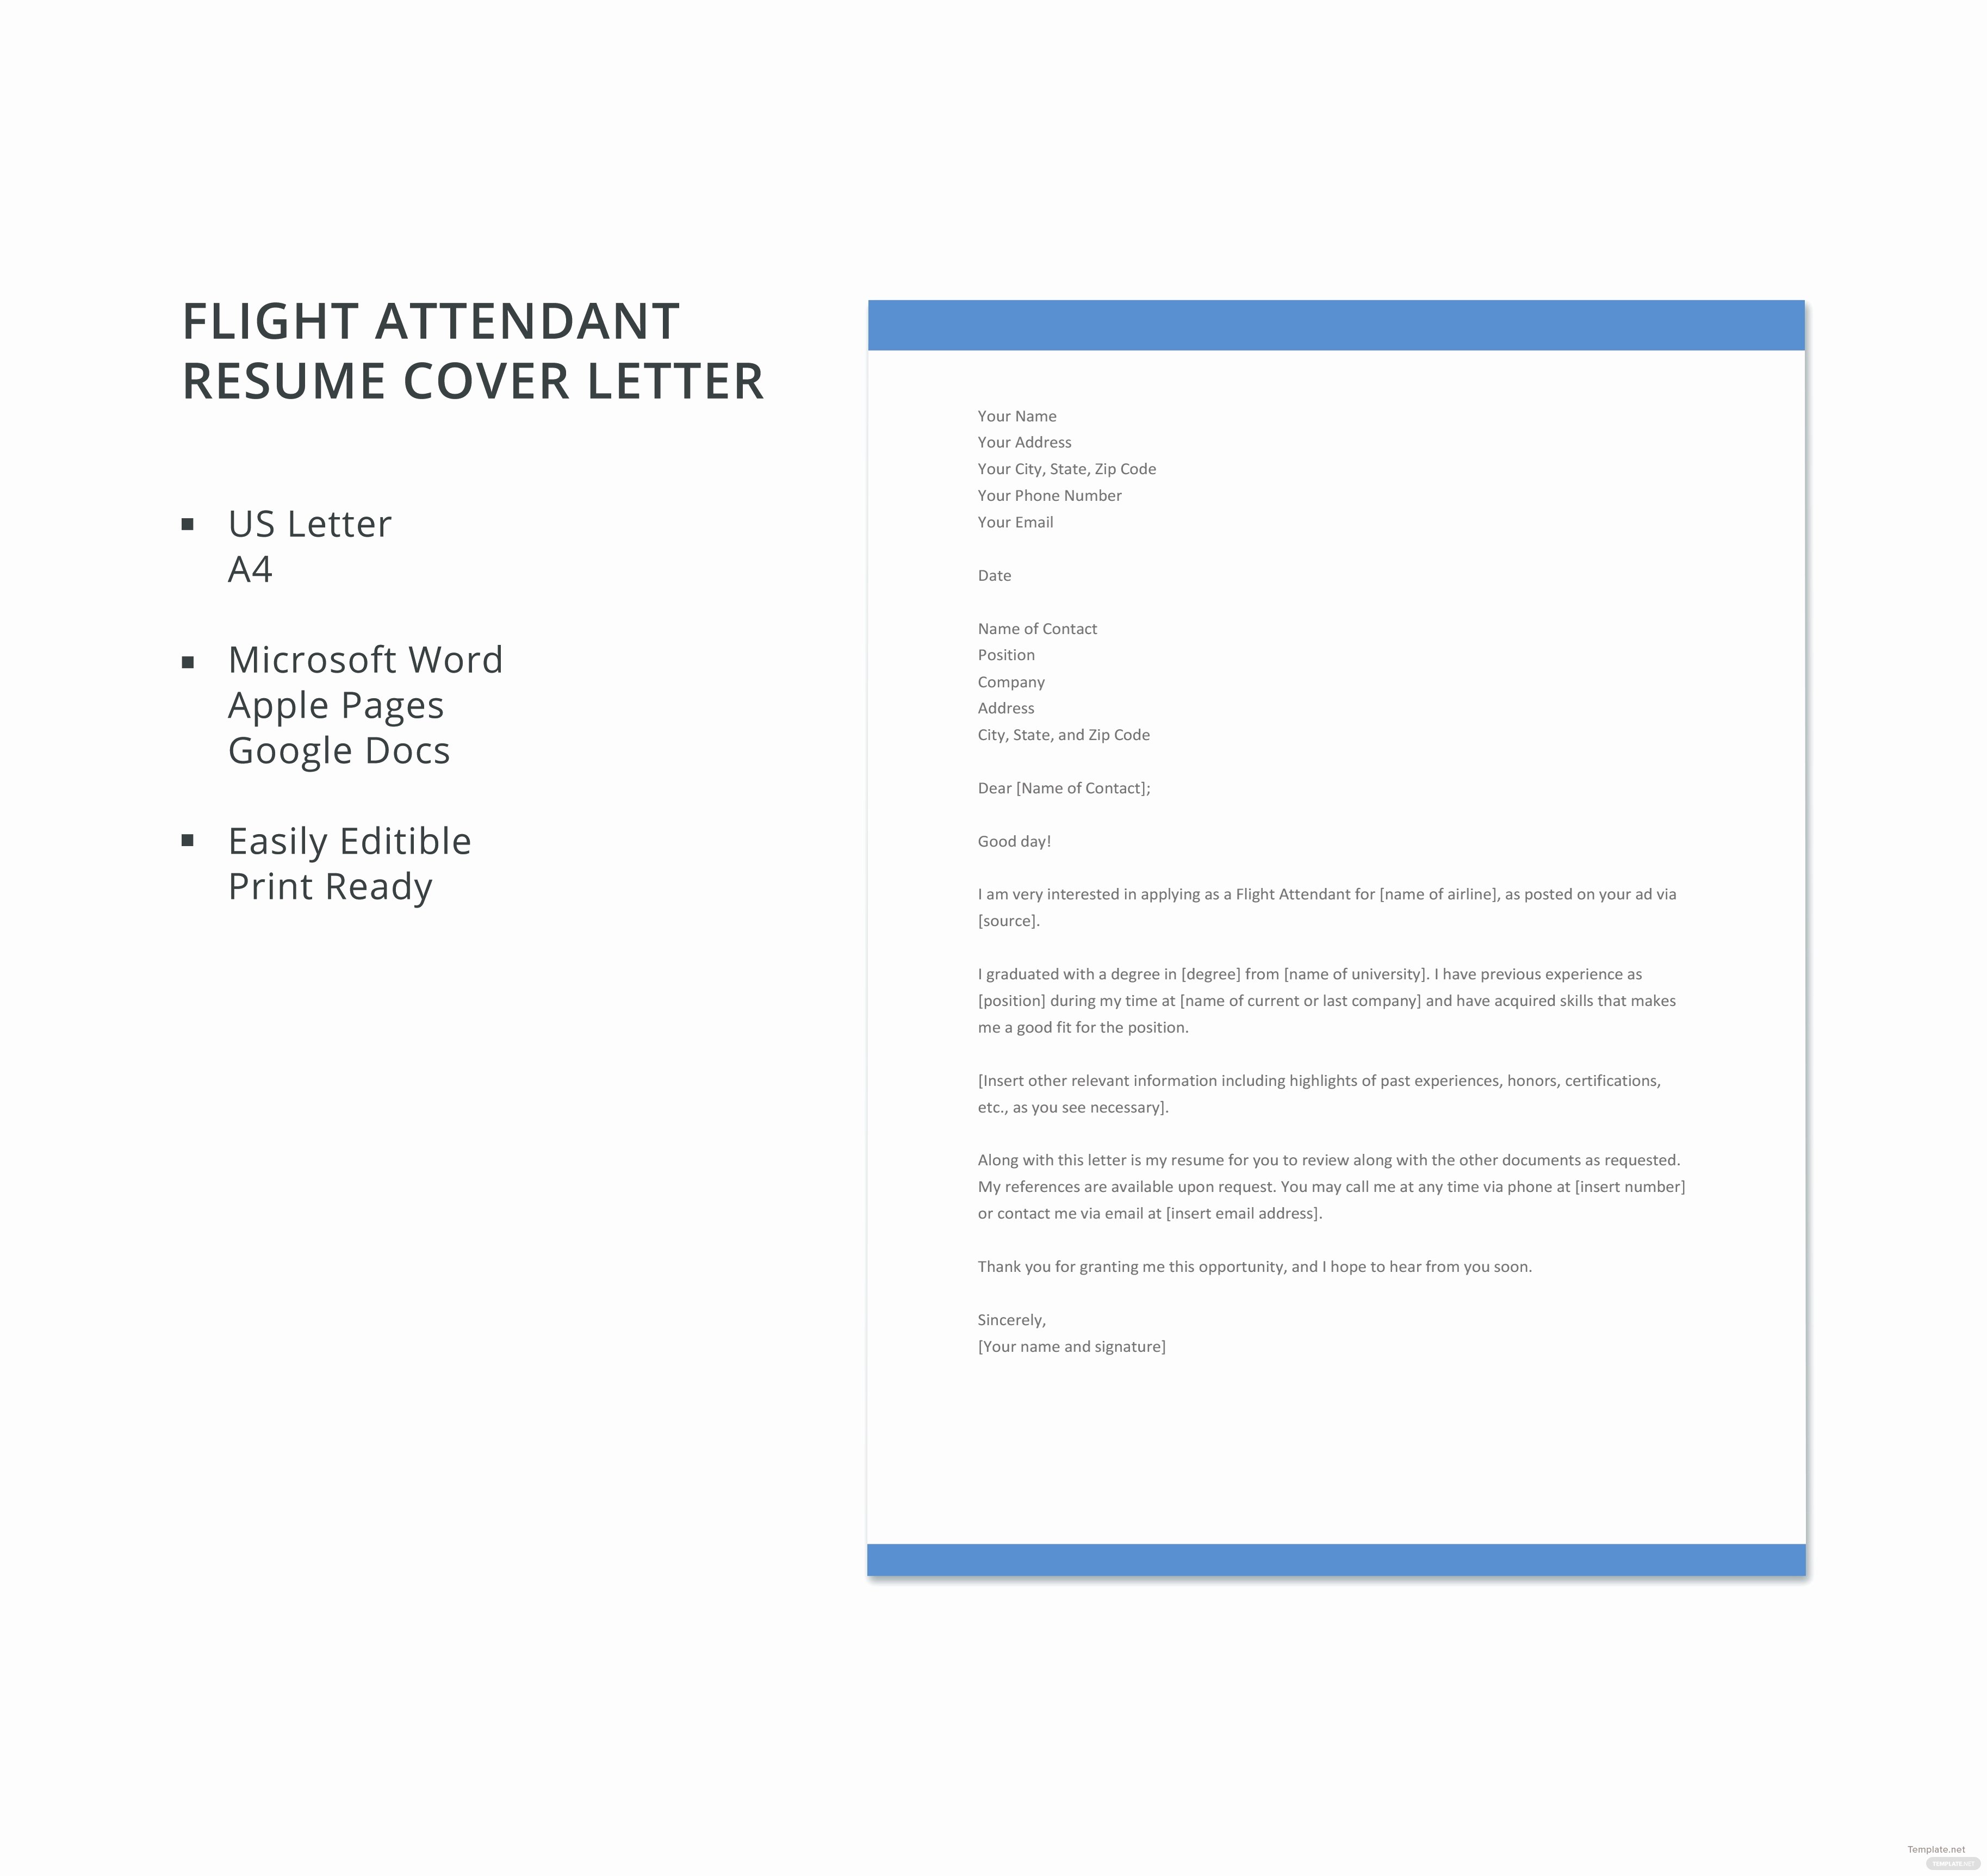 Flight attendant Resume Cover Letter New Free Flight attendant Resume Cover Letter Template In